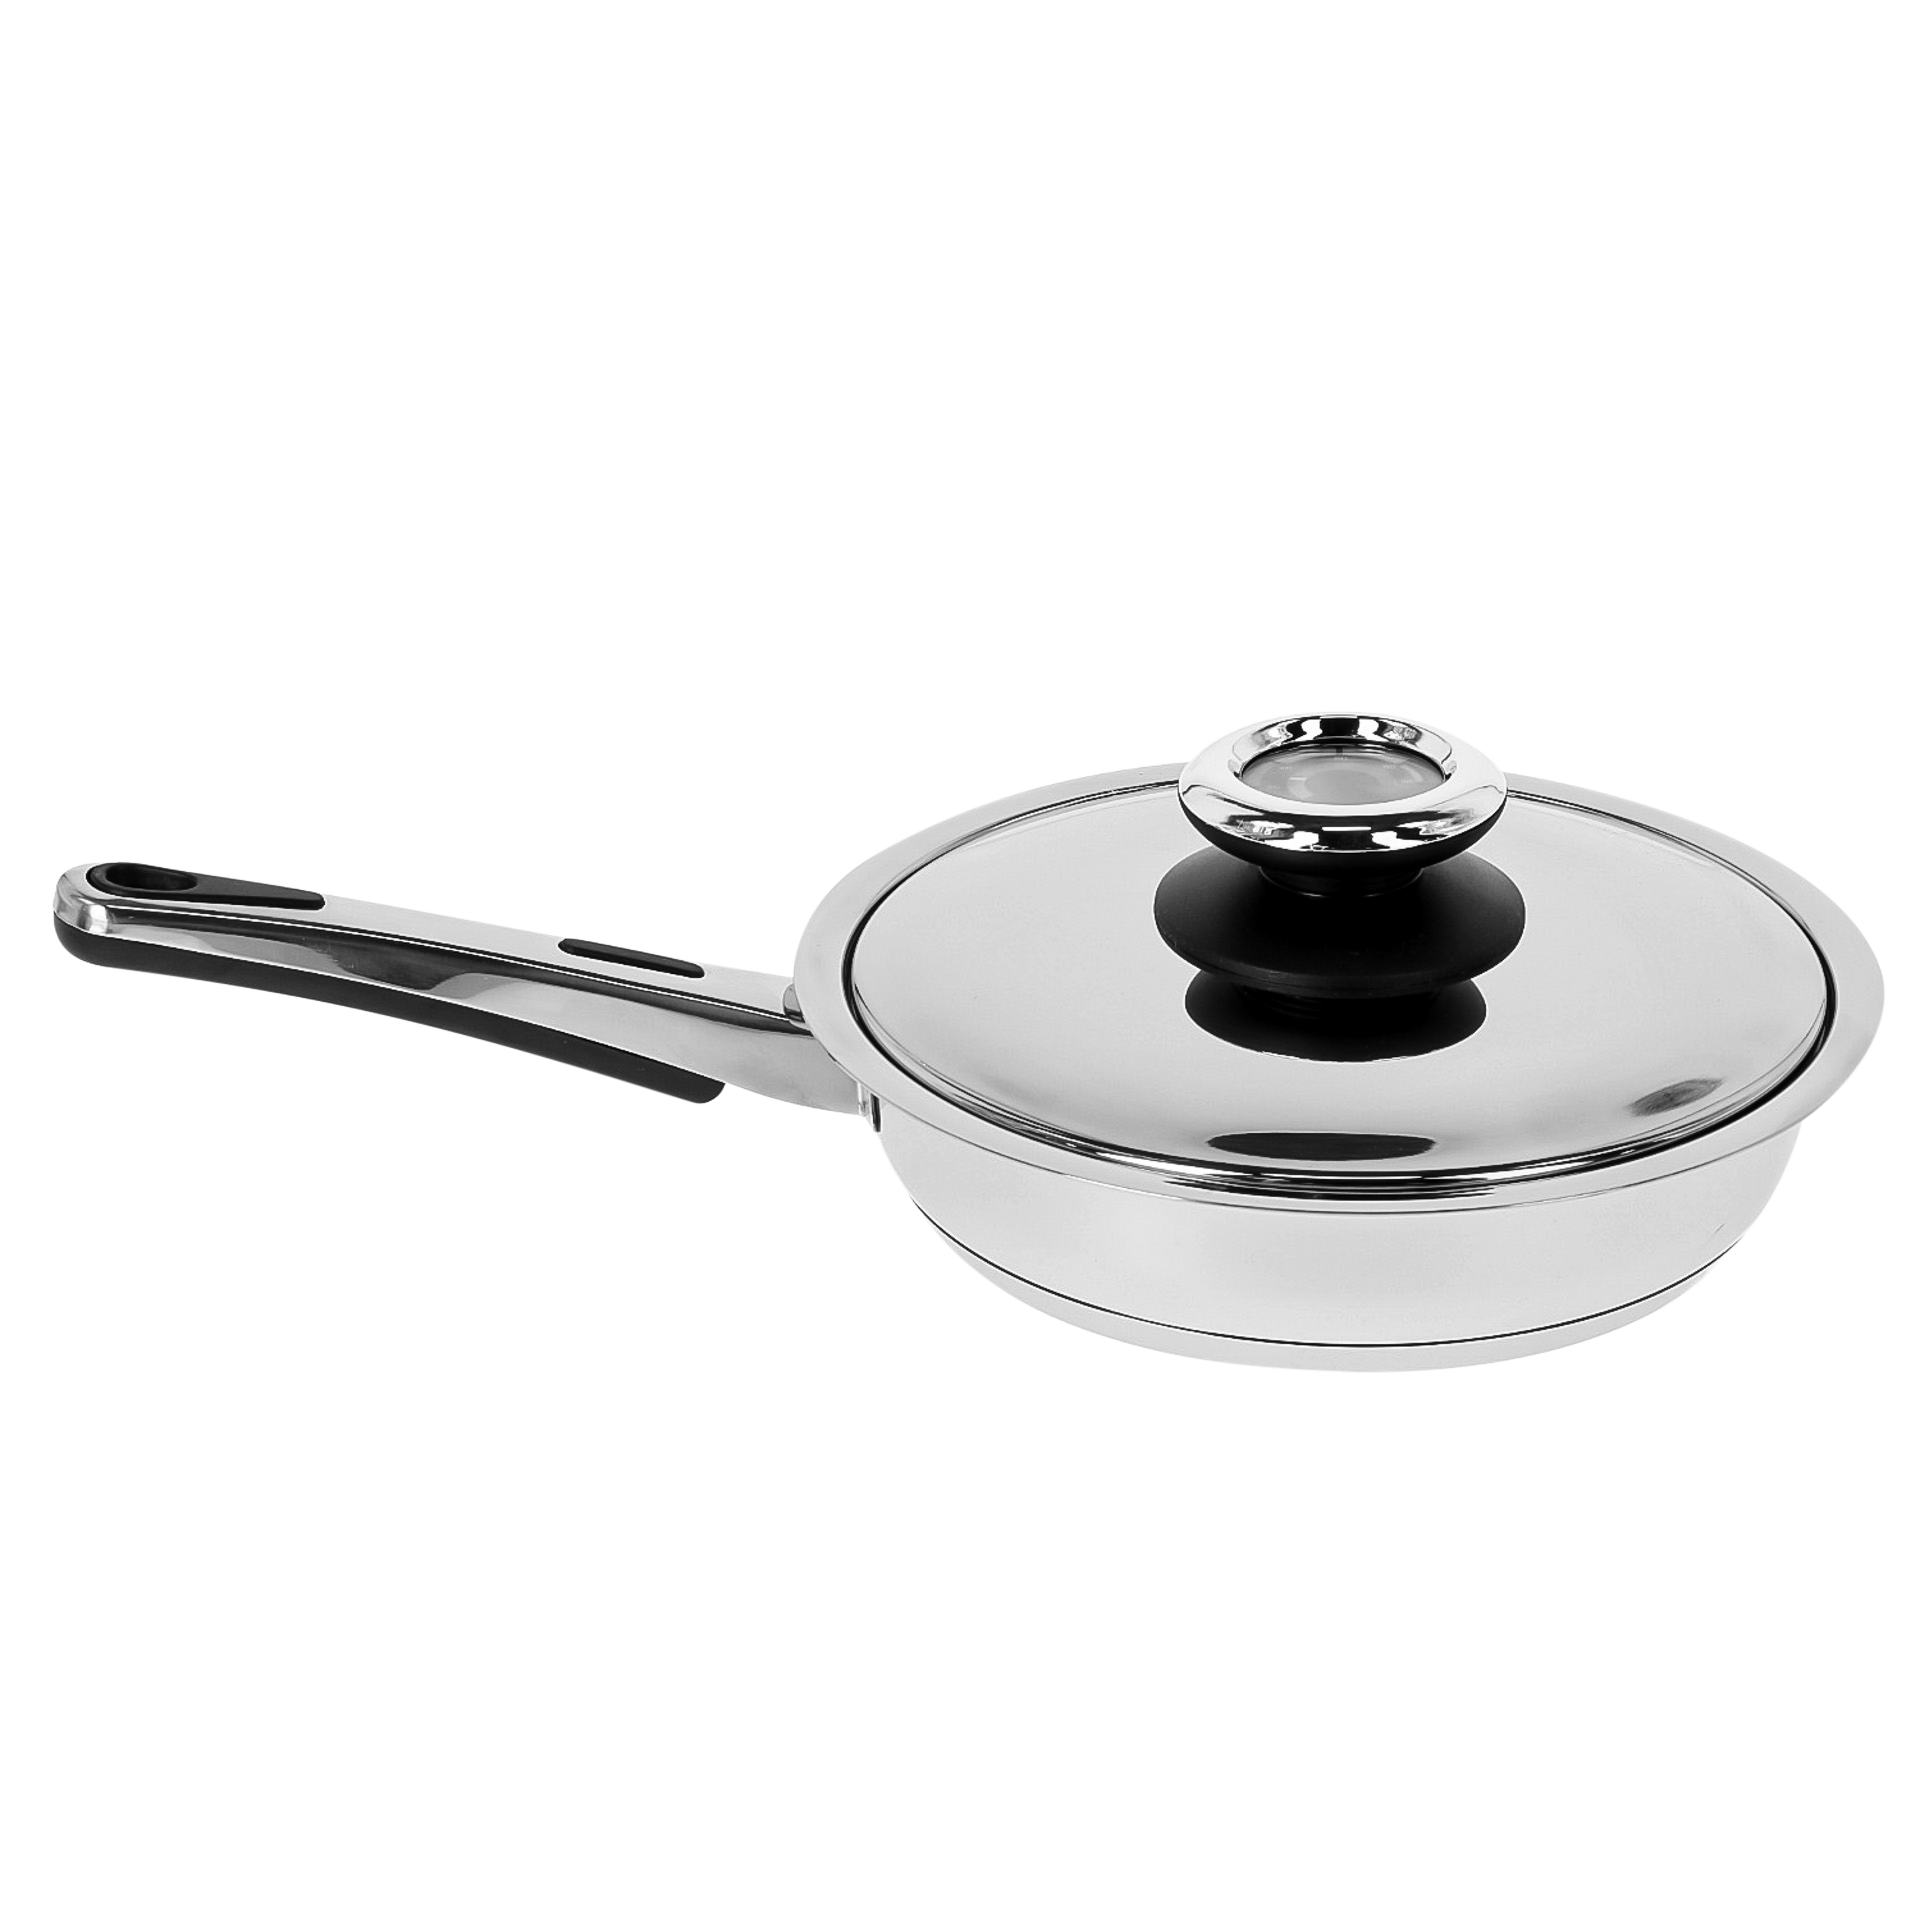 VERSATILE-FRYING PAN W/LID 22x5cm